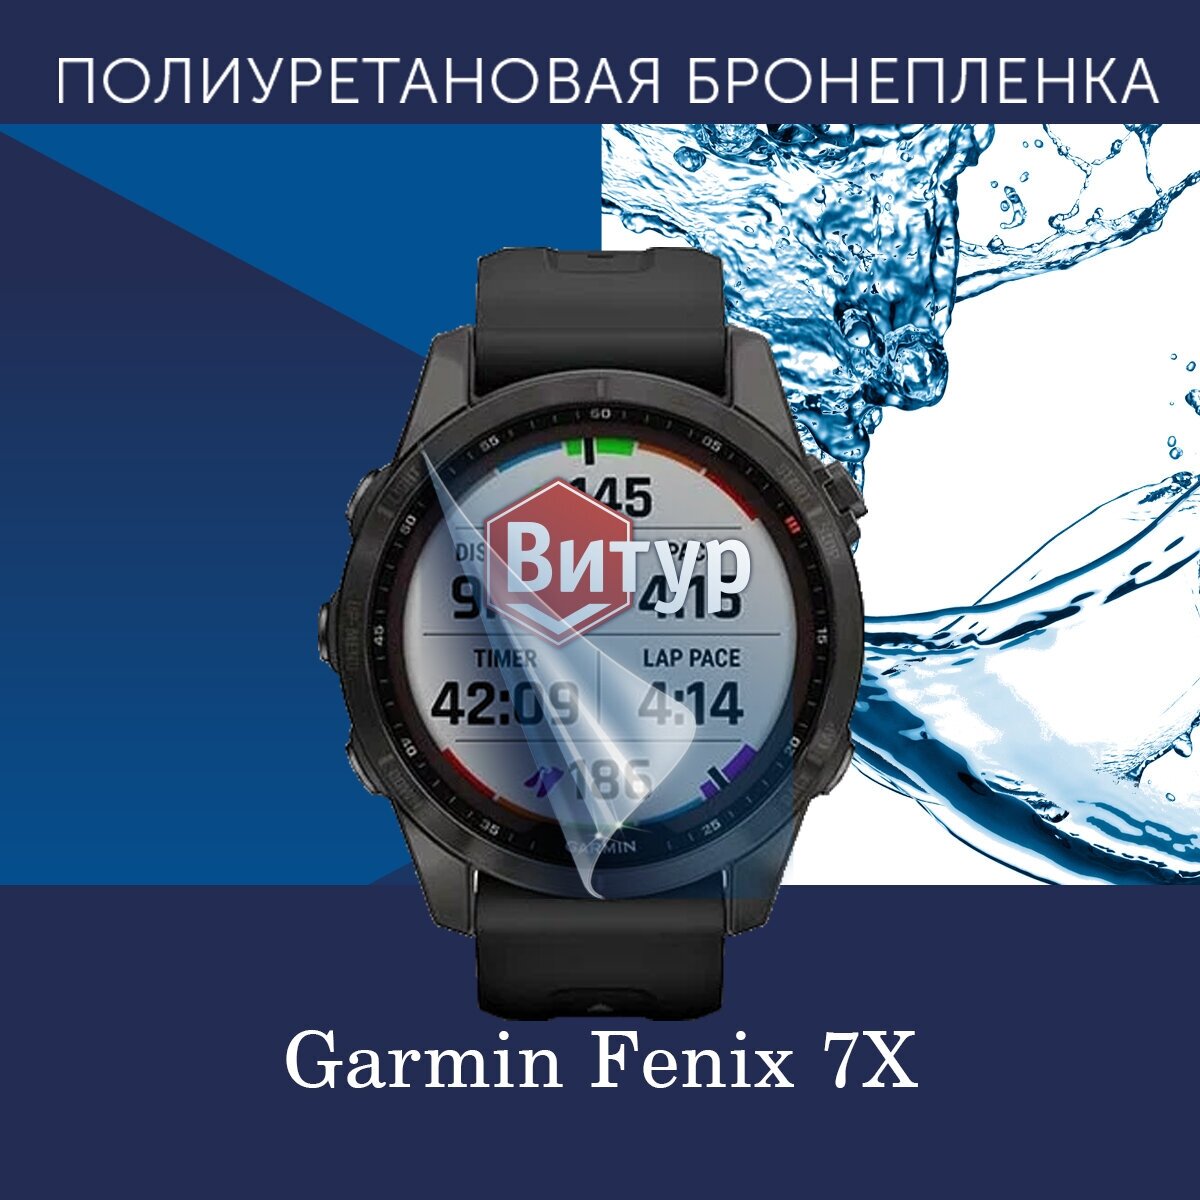 Полиуретановая бронепленка для смарт часов Garmin Fenix 7X / Защитная пленка для Гармин Феникс 7икс / Глянцевая